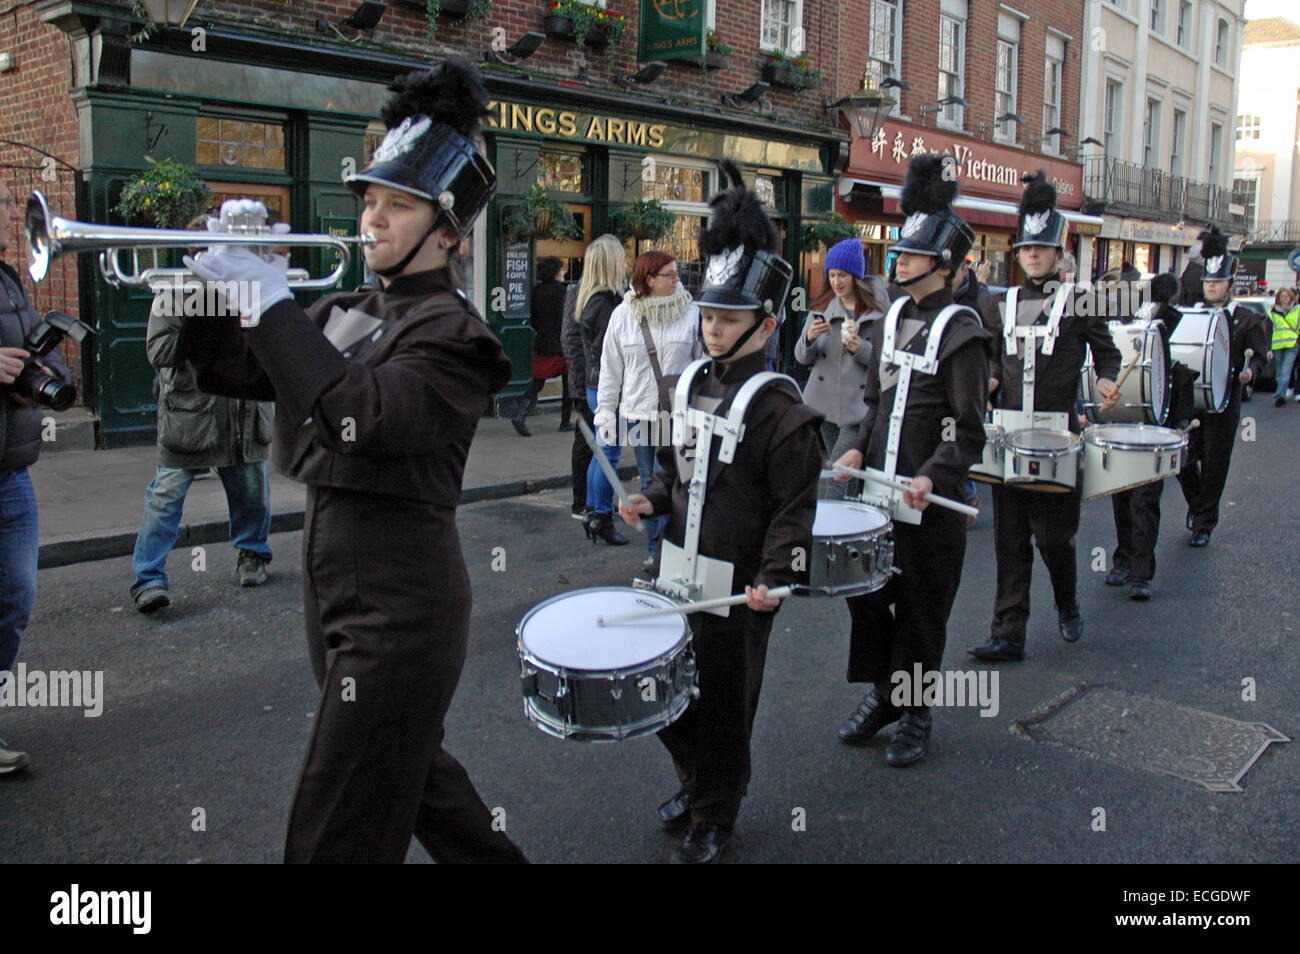 Londres, Royaume-Uni. 14 Décembre, 2014. Greenwich Village parade annuelle de sci-fi et pantomime course de chevaux. Credit : JOHNNY ARMSTEAD/Alamy Live News Banque D'Images